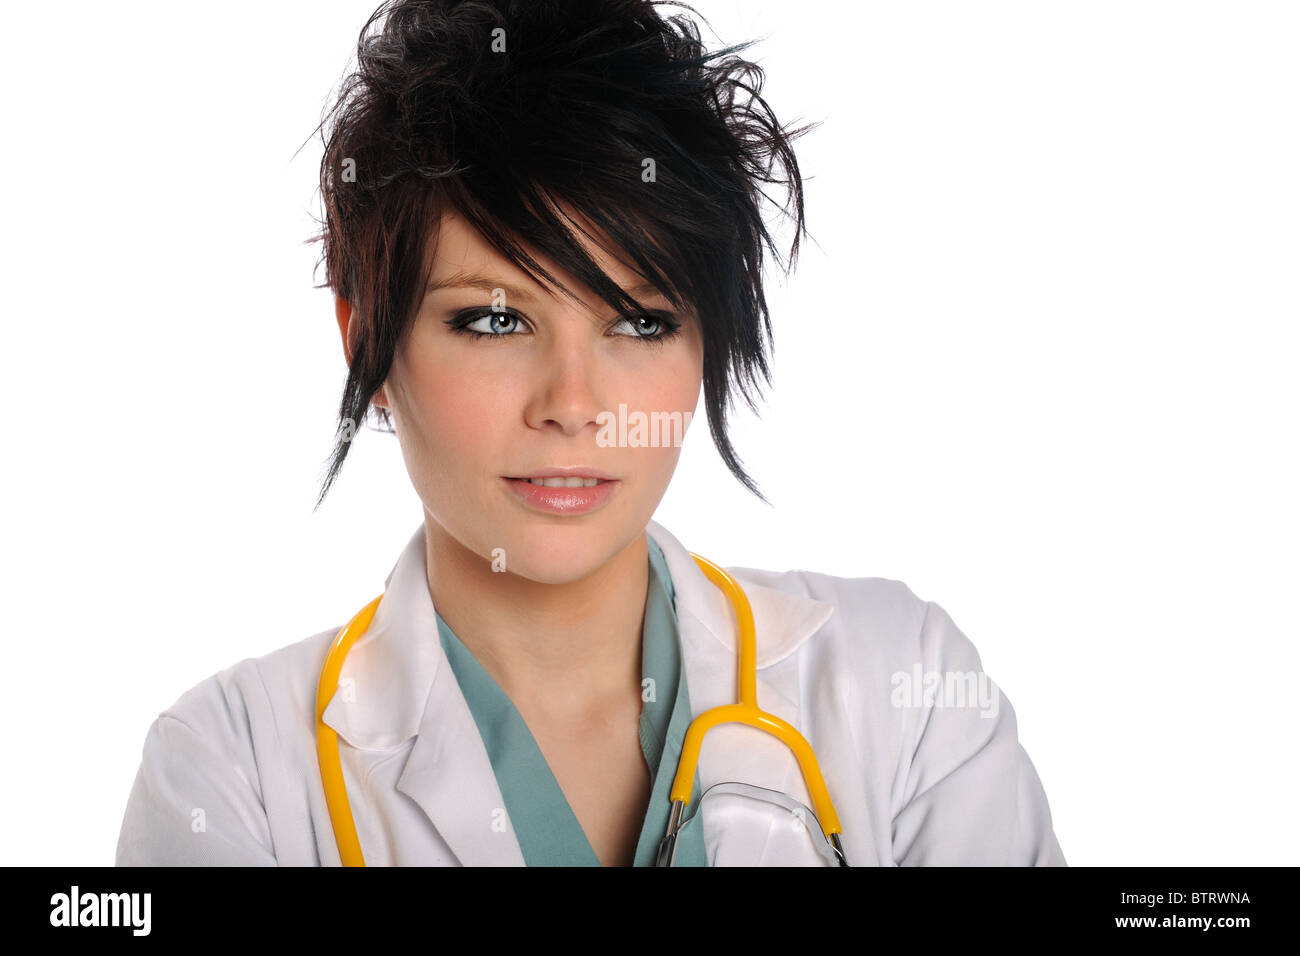 Ritratto di giovane medico con stetoscopio isolate su sfondo bianco Foto Stock